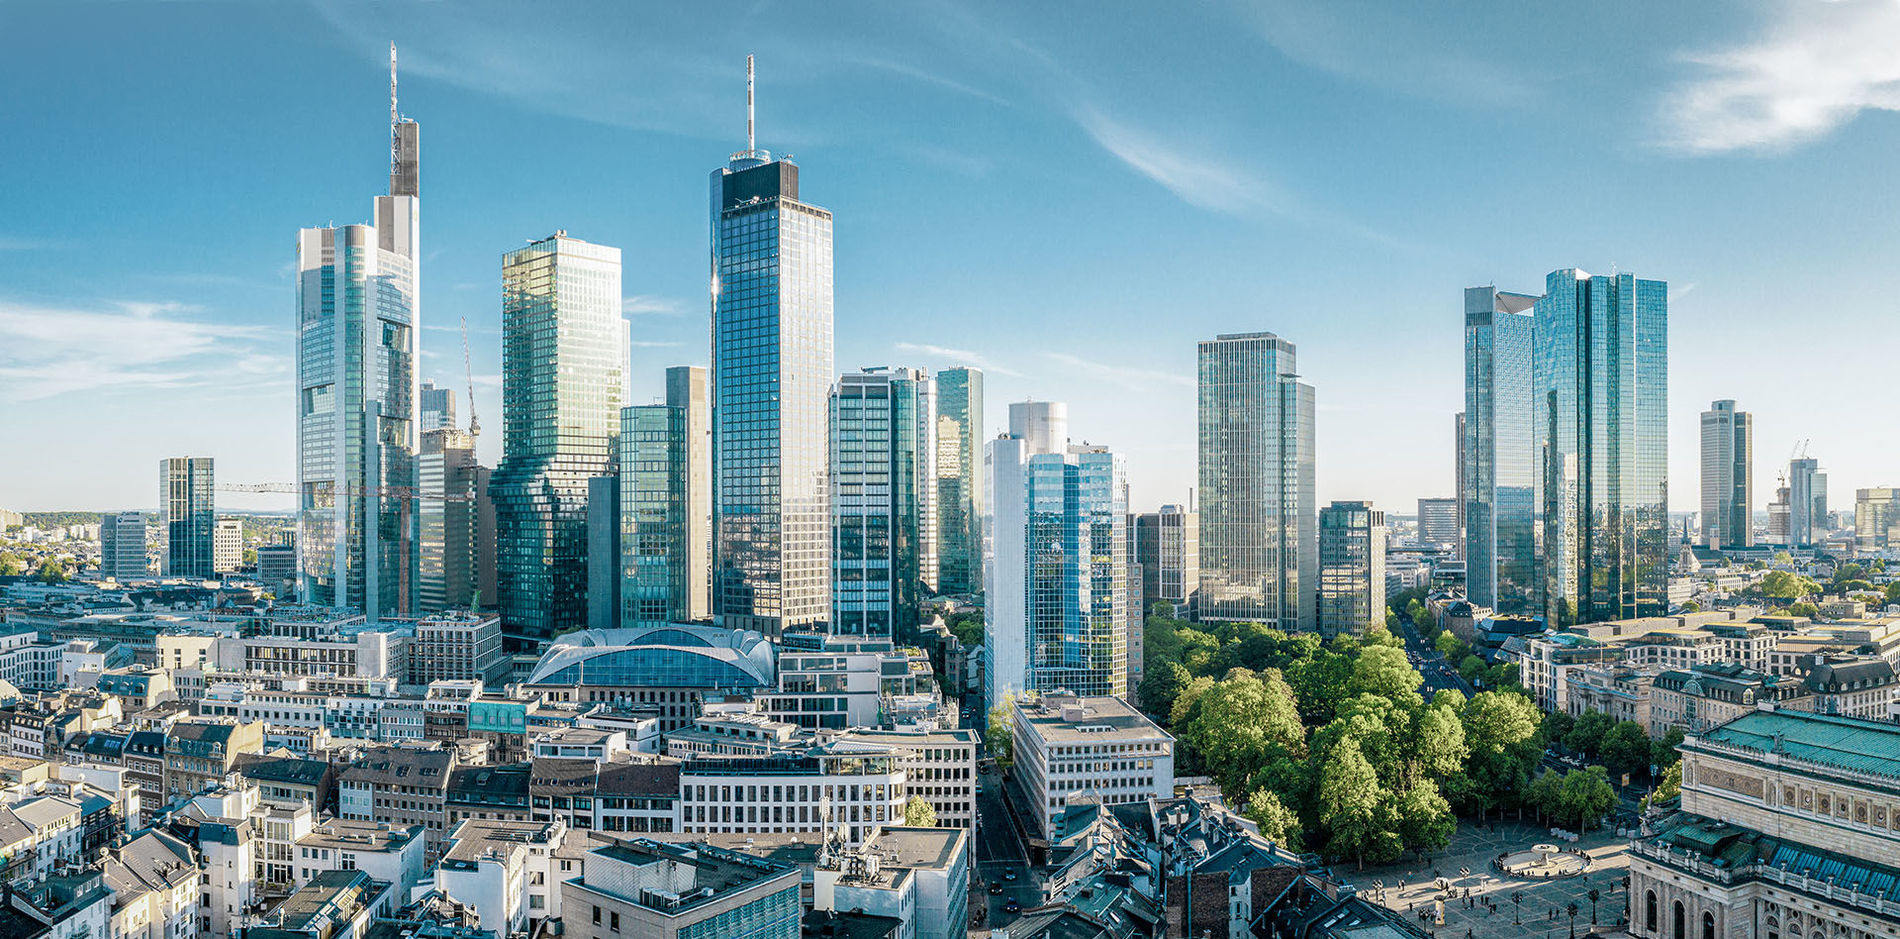 Die Skyline Frankfurts mit viele Gebäuden und Hochhäusern vor blauem Himmel 